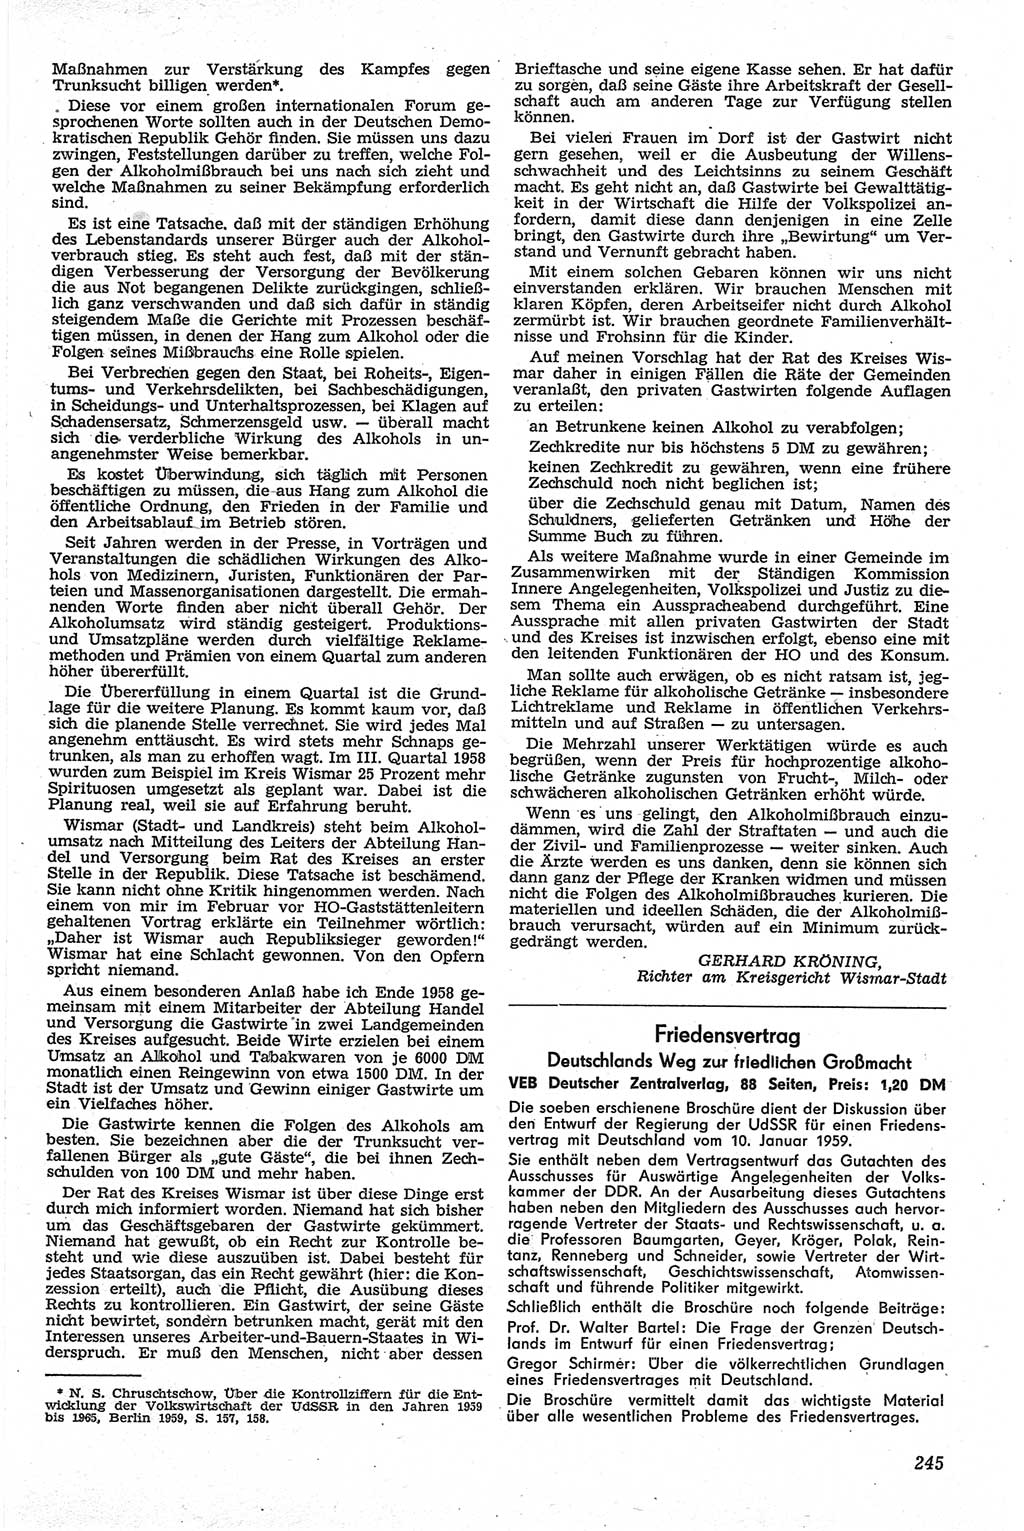 Neue Justiz (NJ), Zeitschrift für Recht und Rechtswissenschaft [Deutsche Demokratische Republik (DDR)], 13. Jahrgang 1959, Seite 245 (NJ DDR 1959, S. 245)